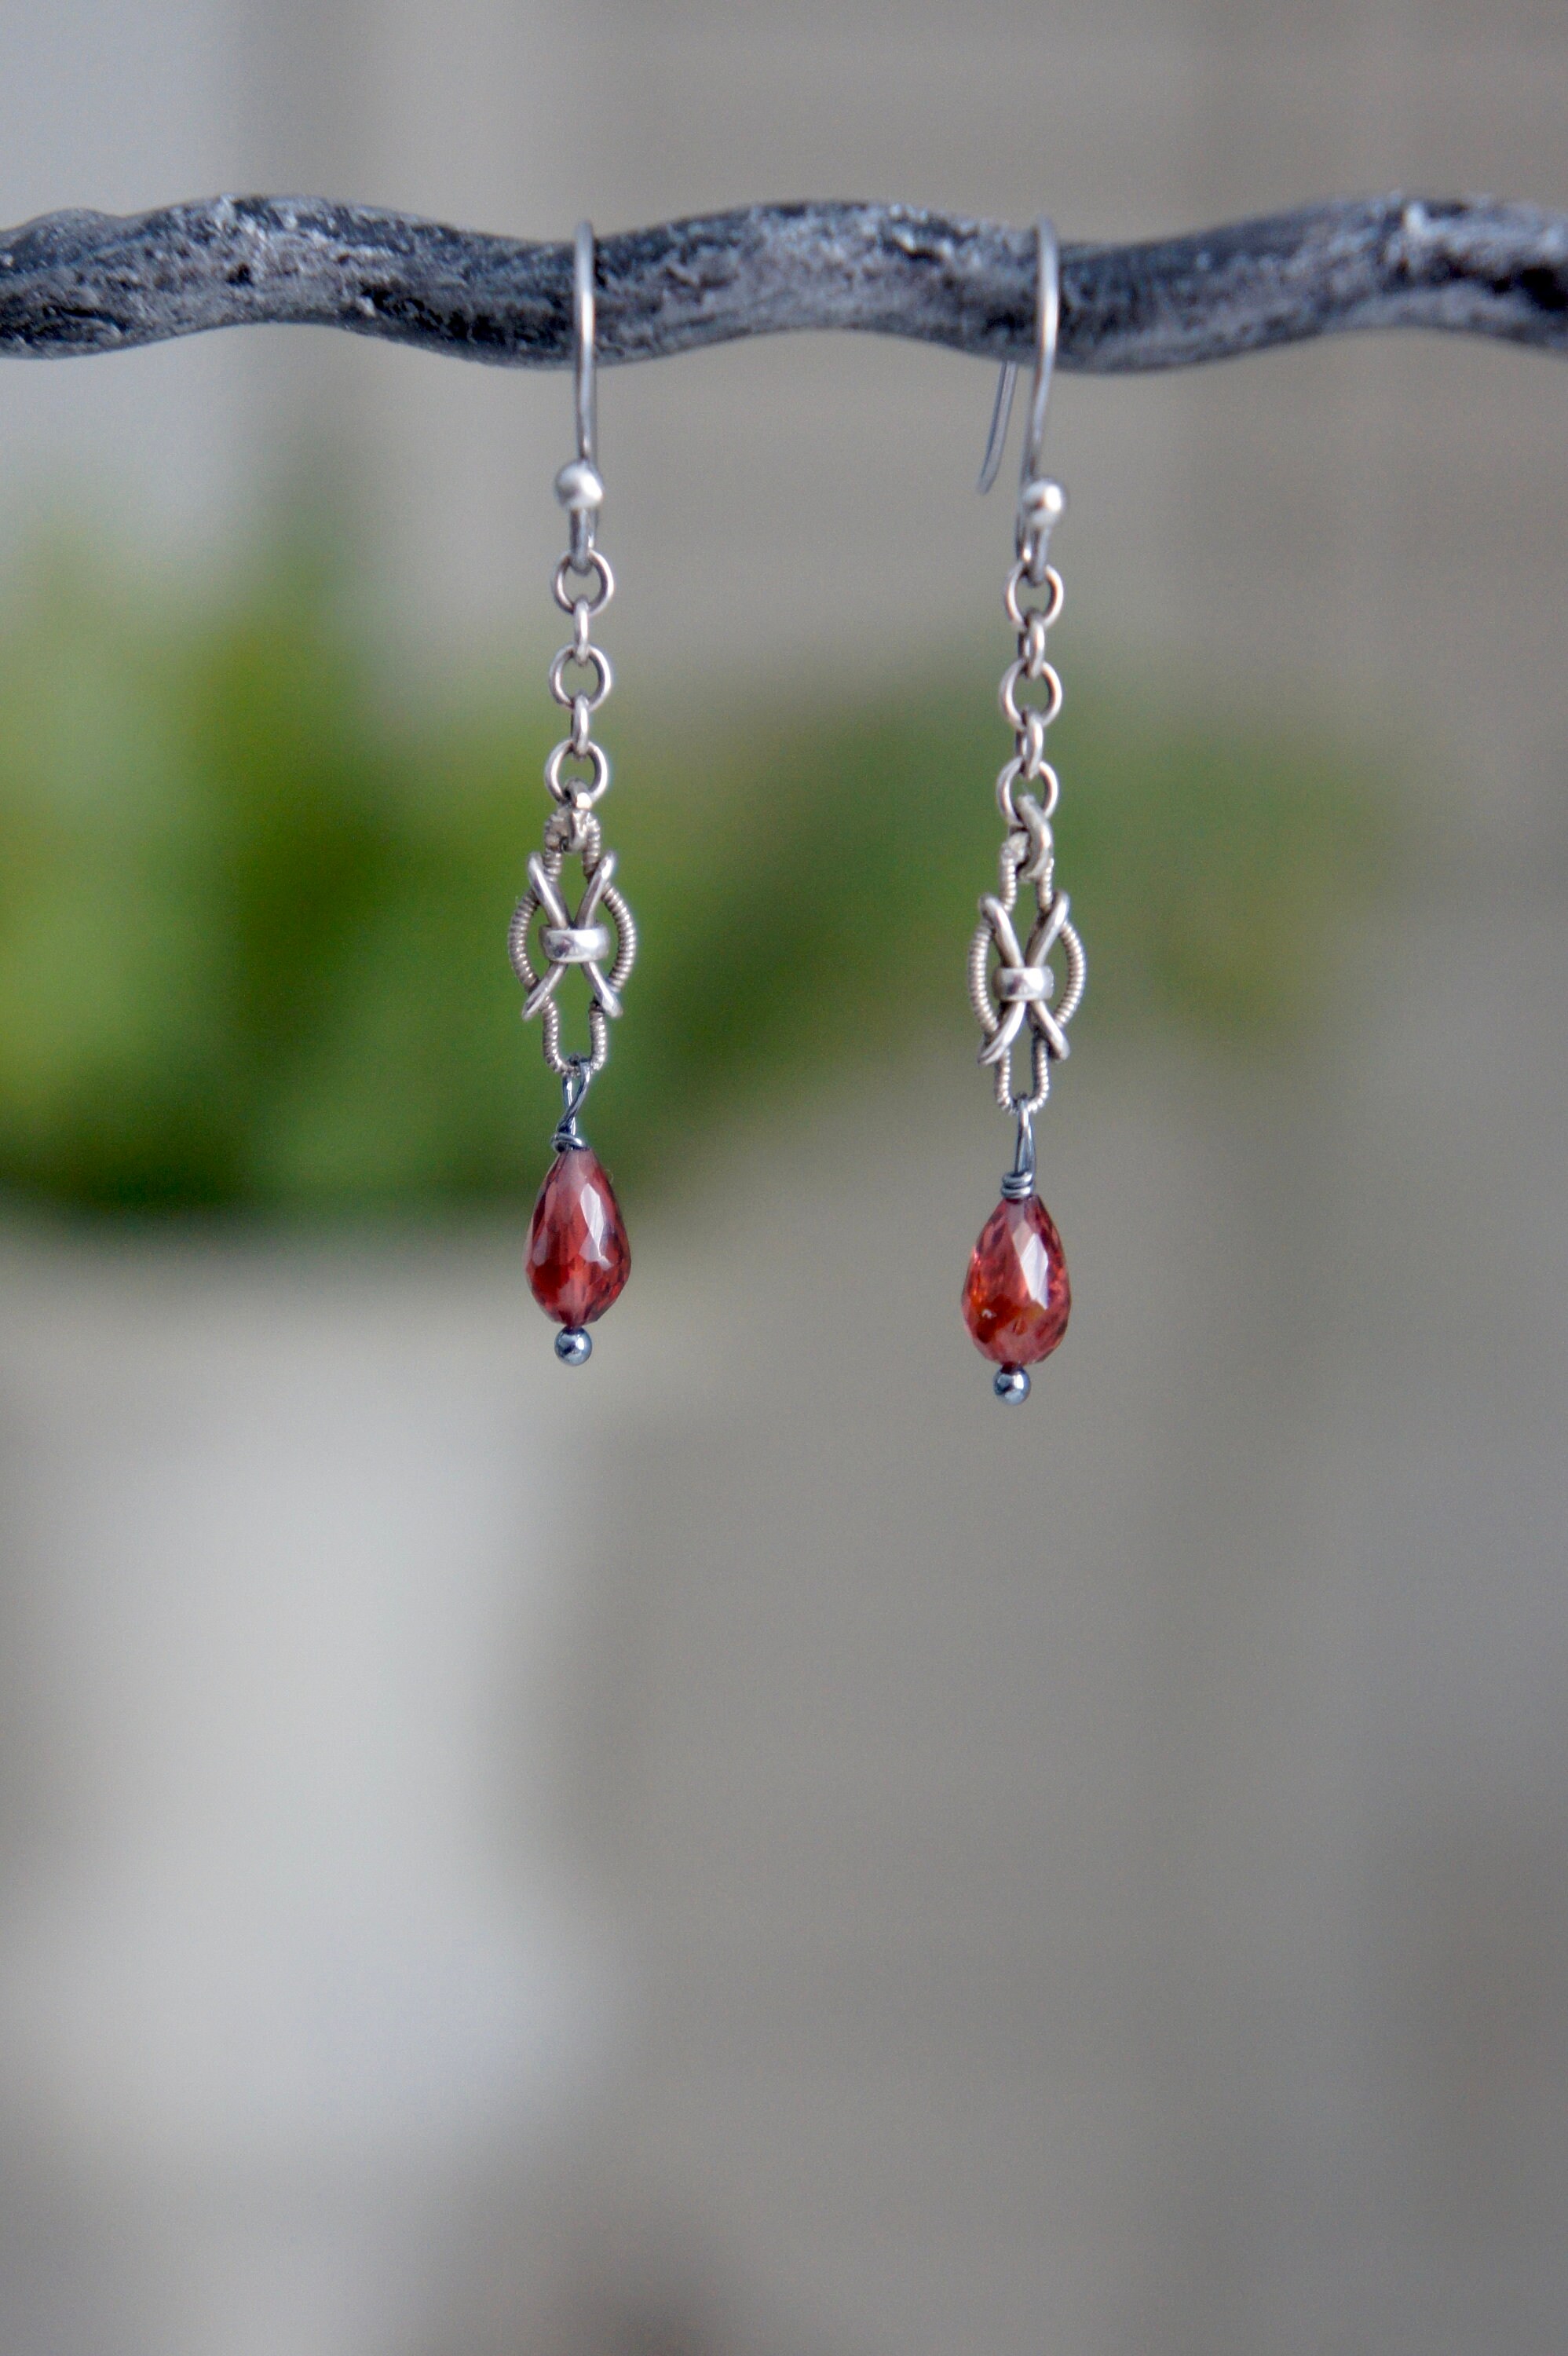 Garnet earrings garnet teardrop earrings red earrings | Etsy